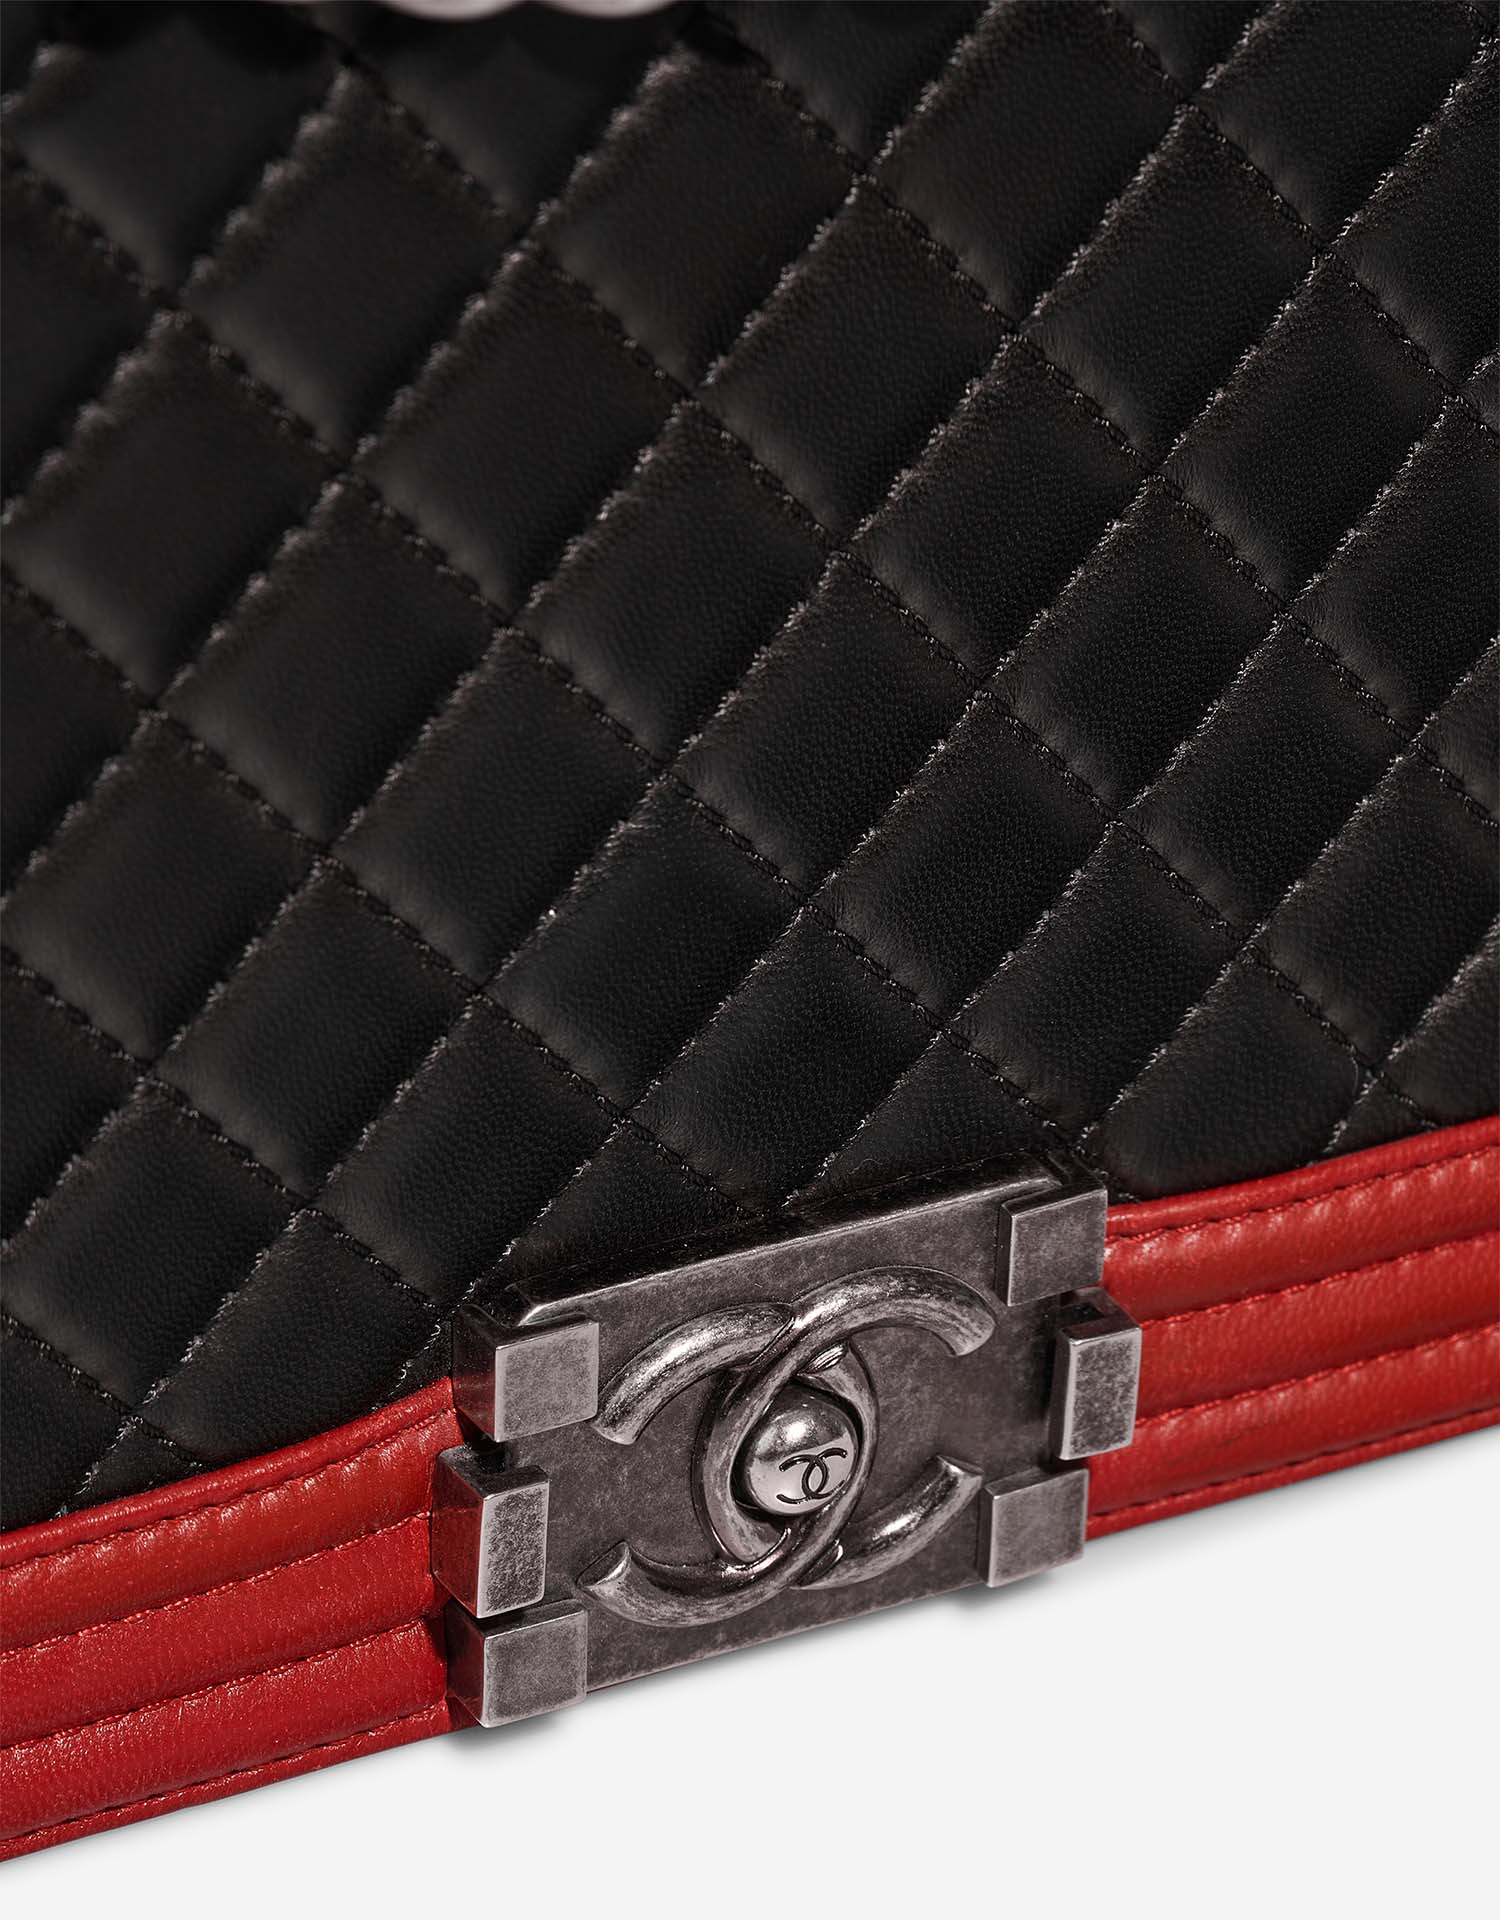 Chanel Boy Large Schwarz-Rot Verschluss-System | Verkaufen Sie Ihre Designer-Tasche auf Saclab.com